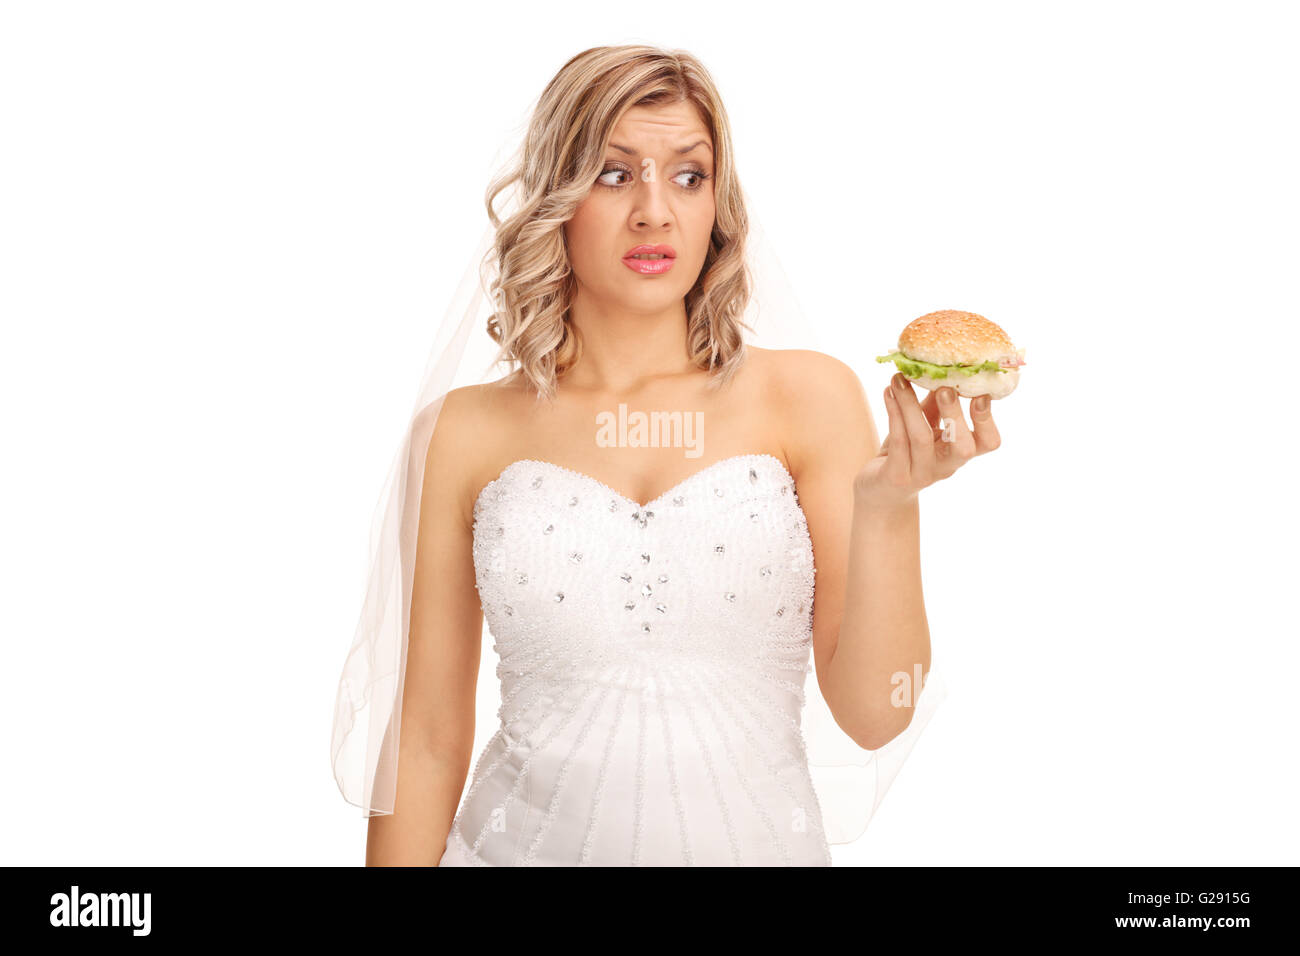 Unentschlossen Braut Blick auf eine verlockende Sandwich isoliert auf weißem Hintergrund Stockfoto